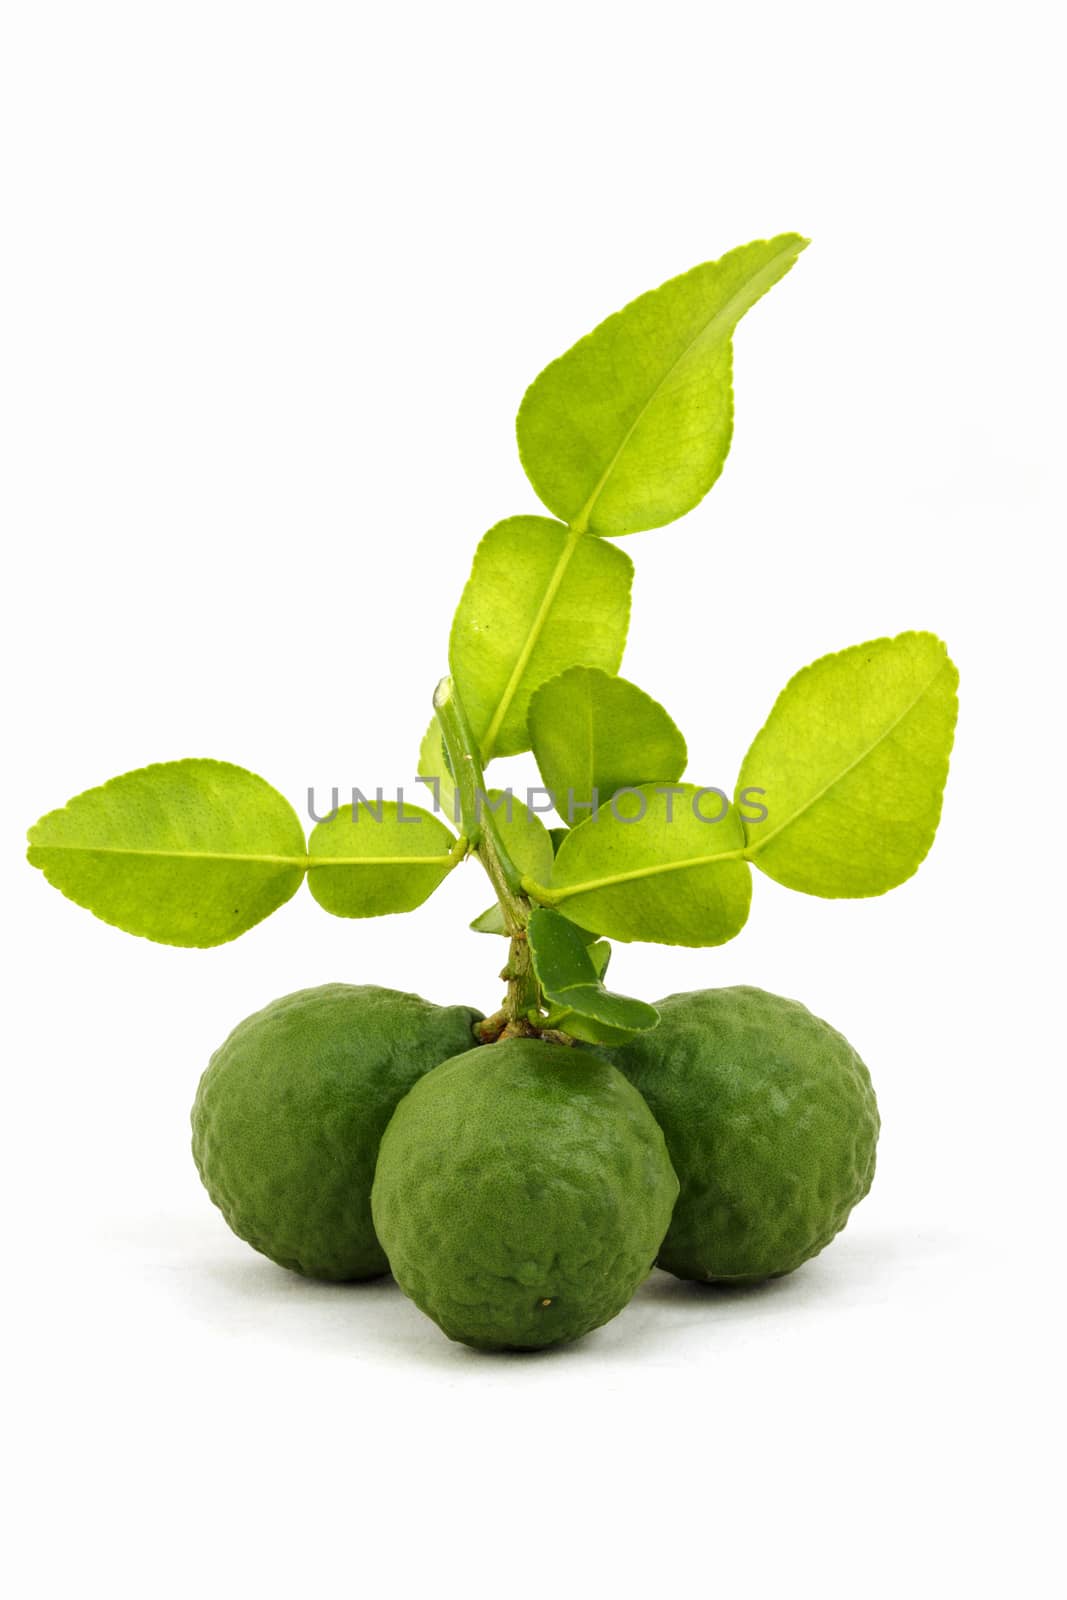 Organic bergamot and bergamot leaves  isolated on white background.